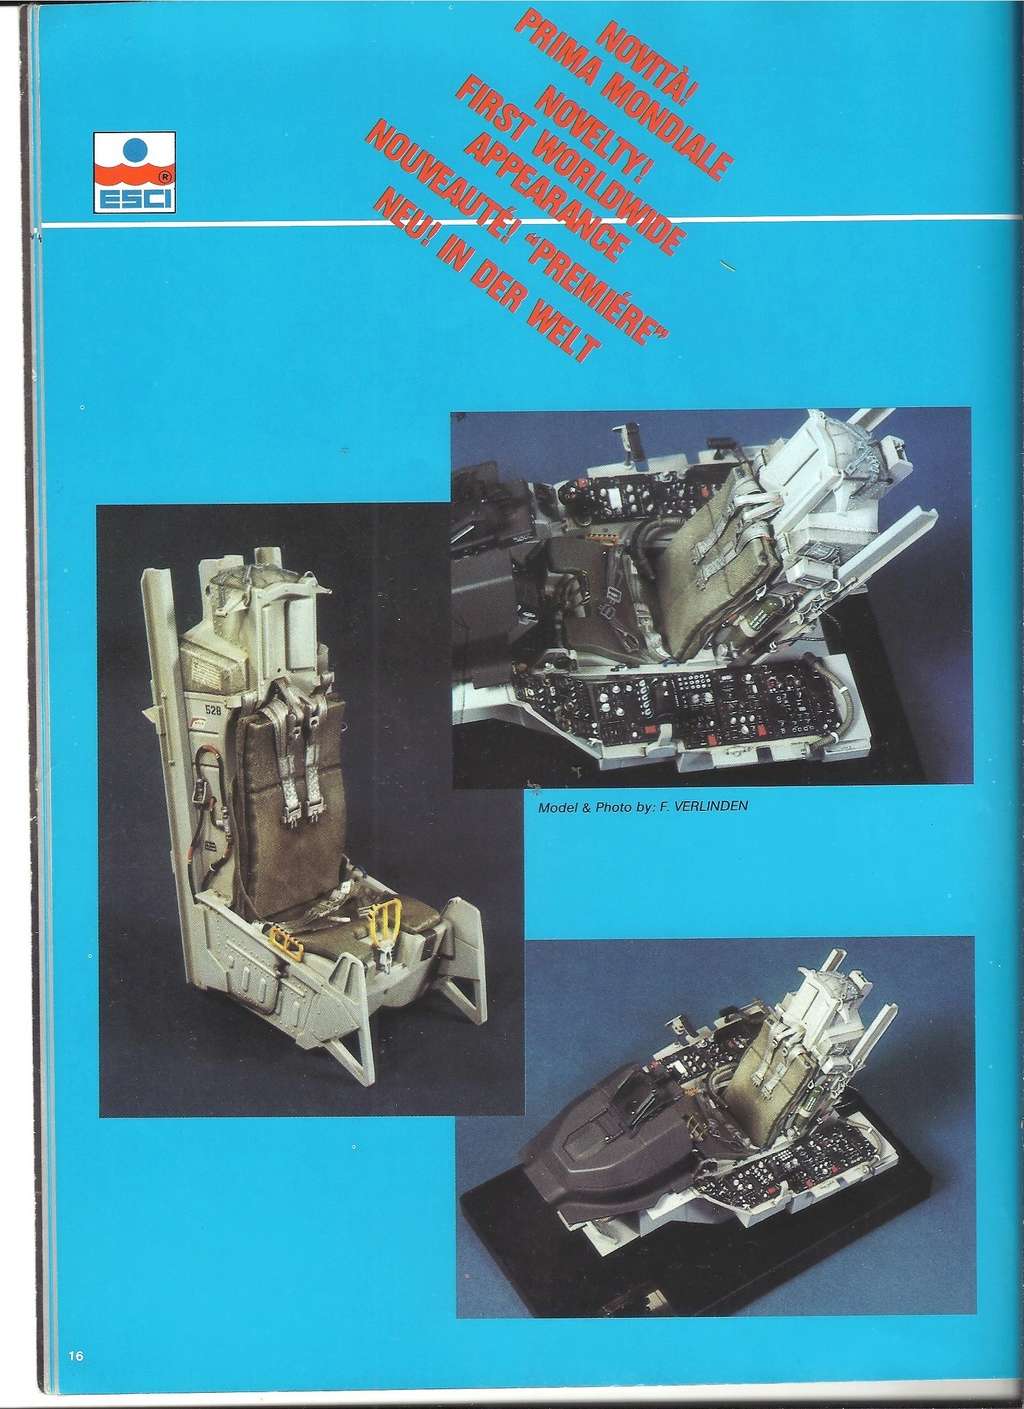 [ESCI 1985] Catalogue 1985 Esci_523